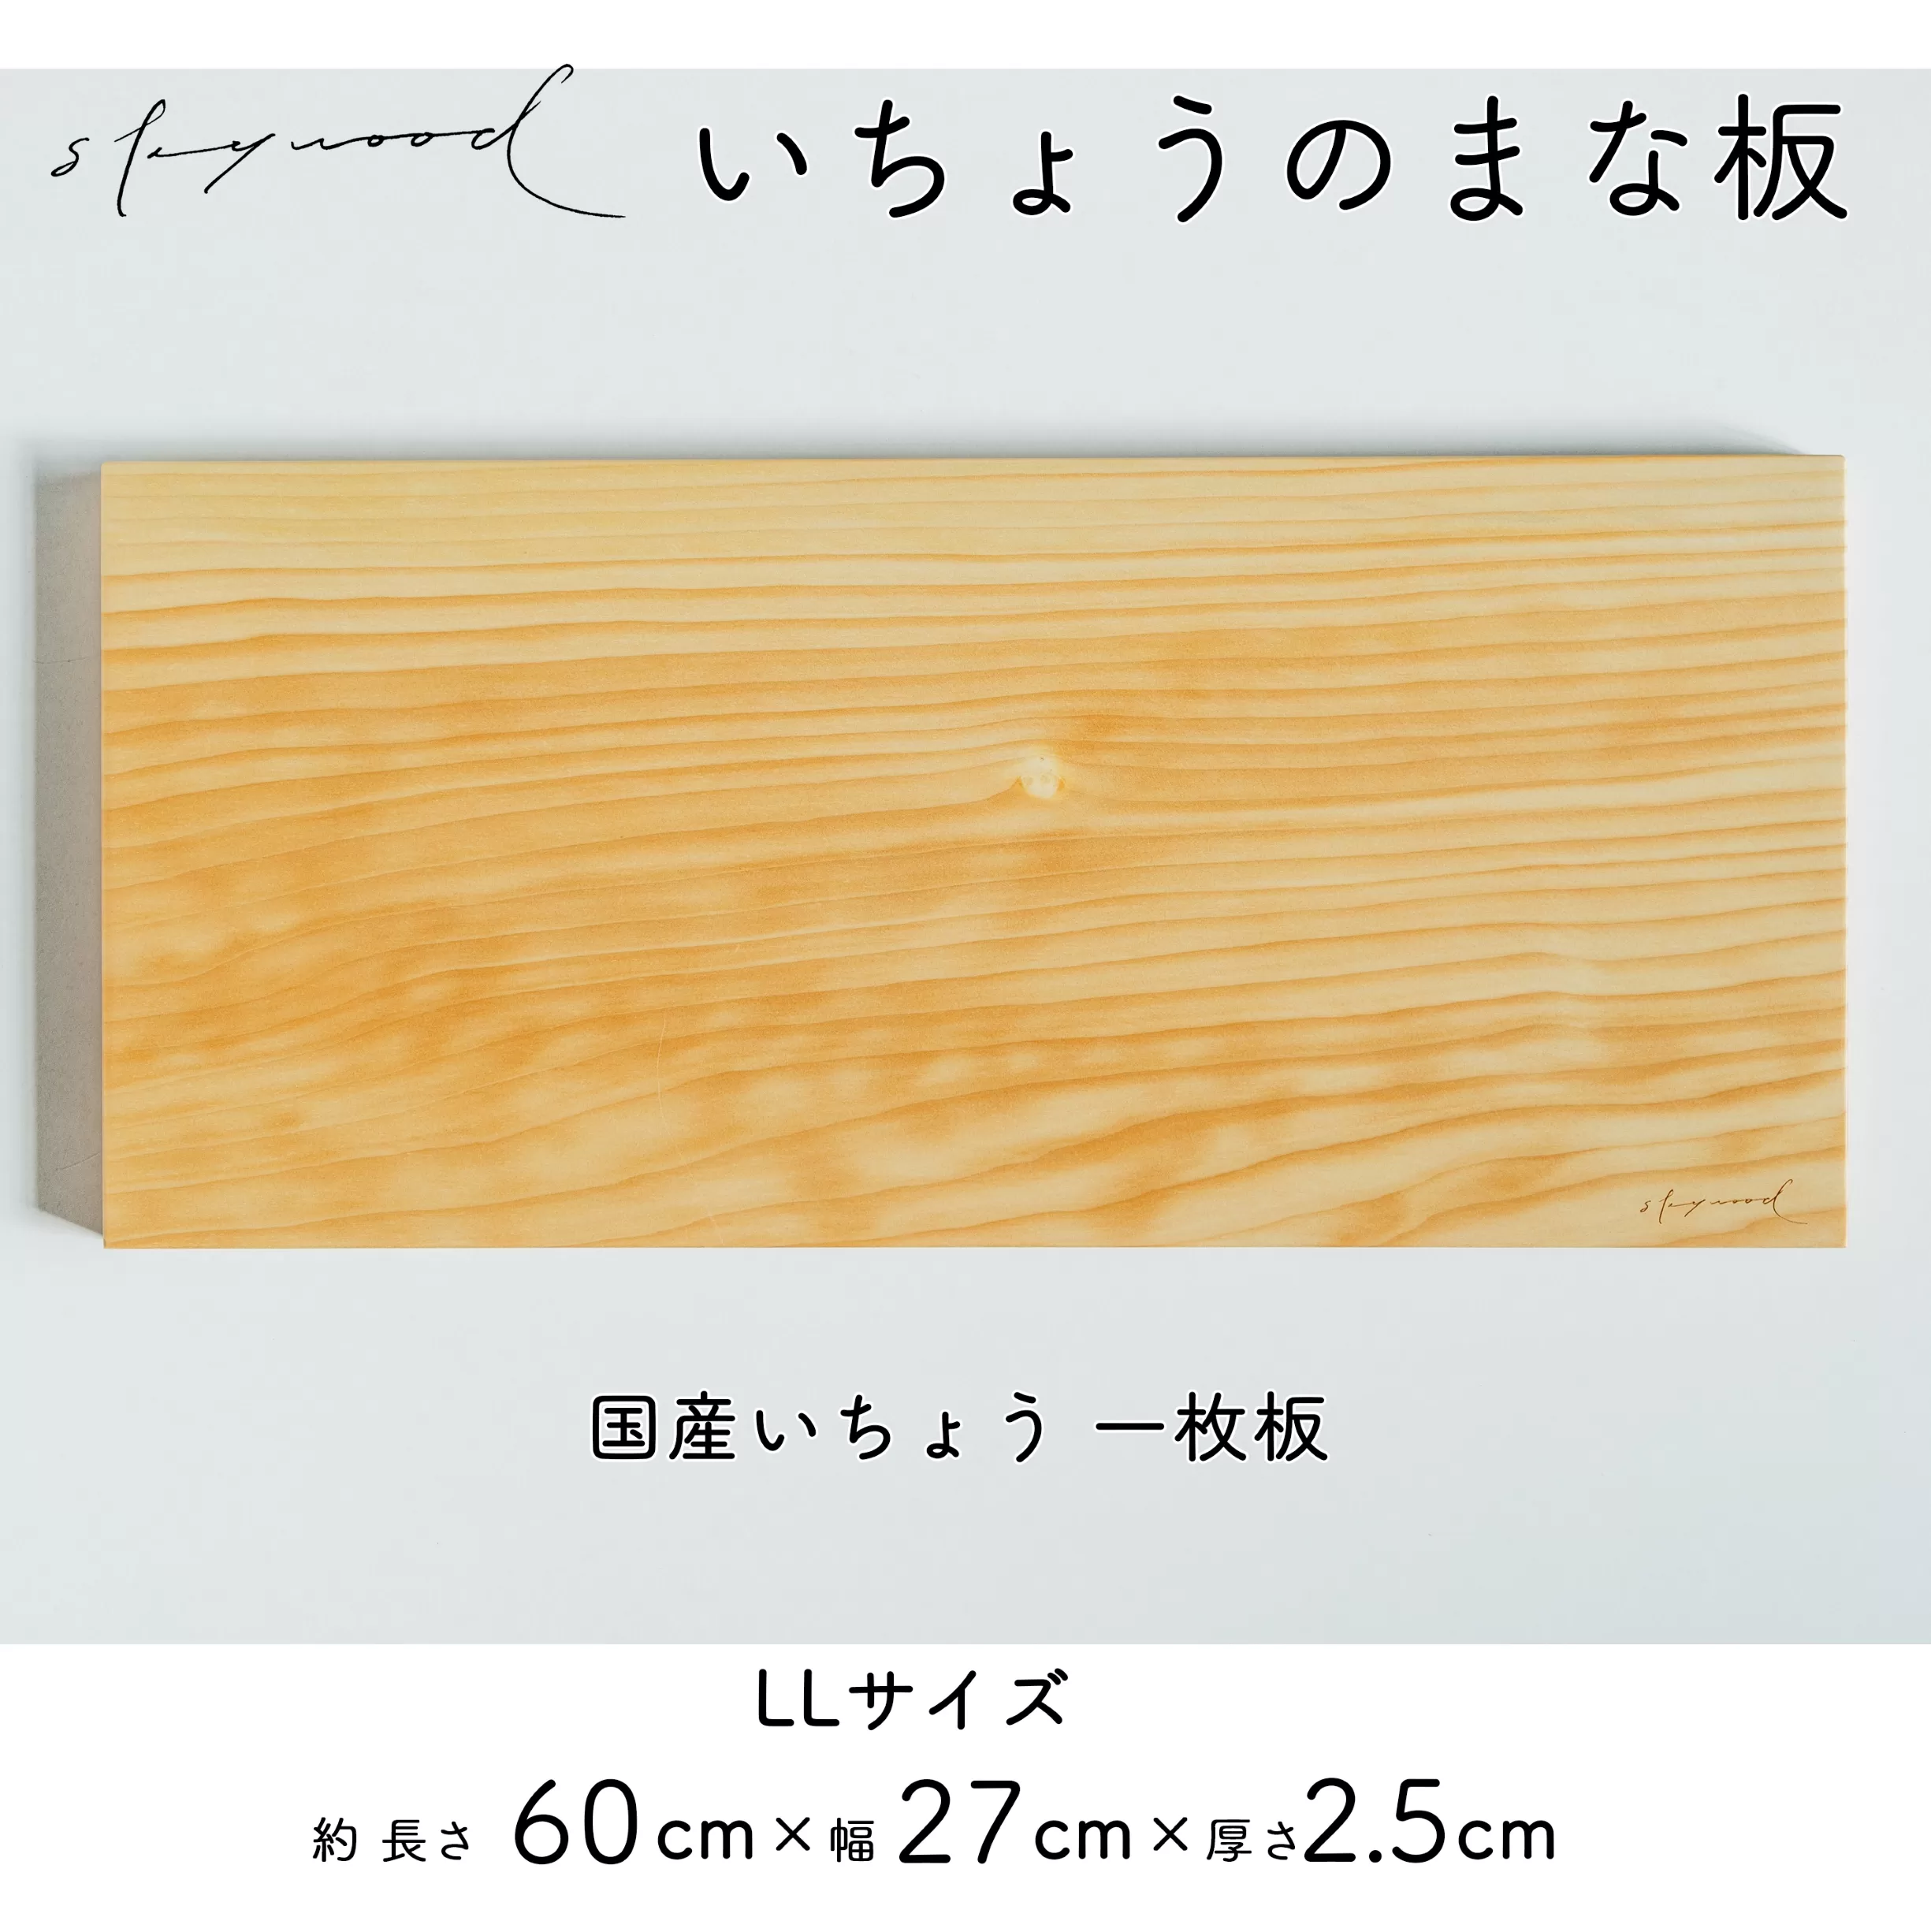 いちょう 一枚板 まな板 LLサイズ 60cm 天然木 高級 限定生産 特大 大きい 国産 イチョウ カッティングボード プレート キッチン 家事 料理